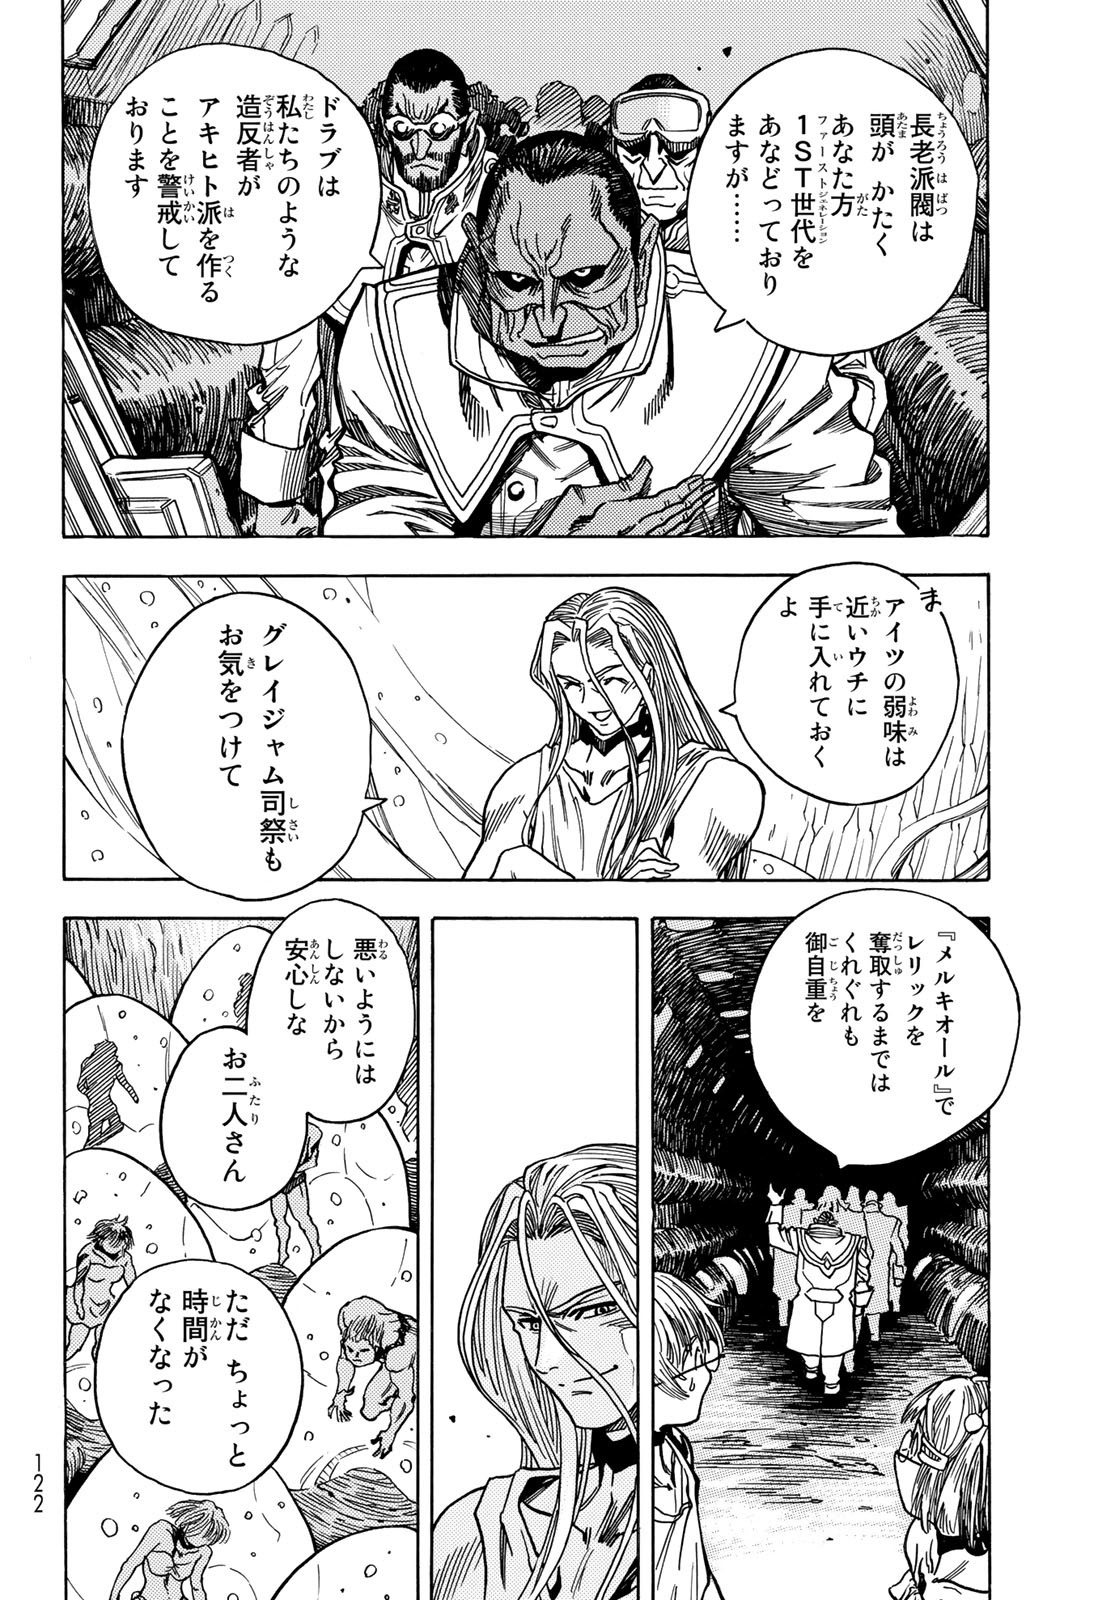 Mugou no Schnell Gear: Chikyuugai Kisouka AI - Chapter 41 - Page 20